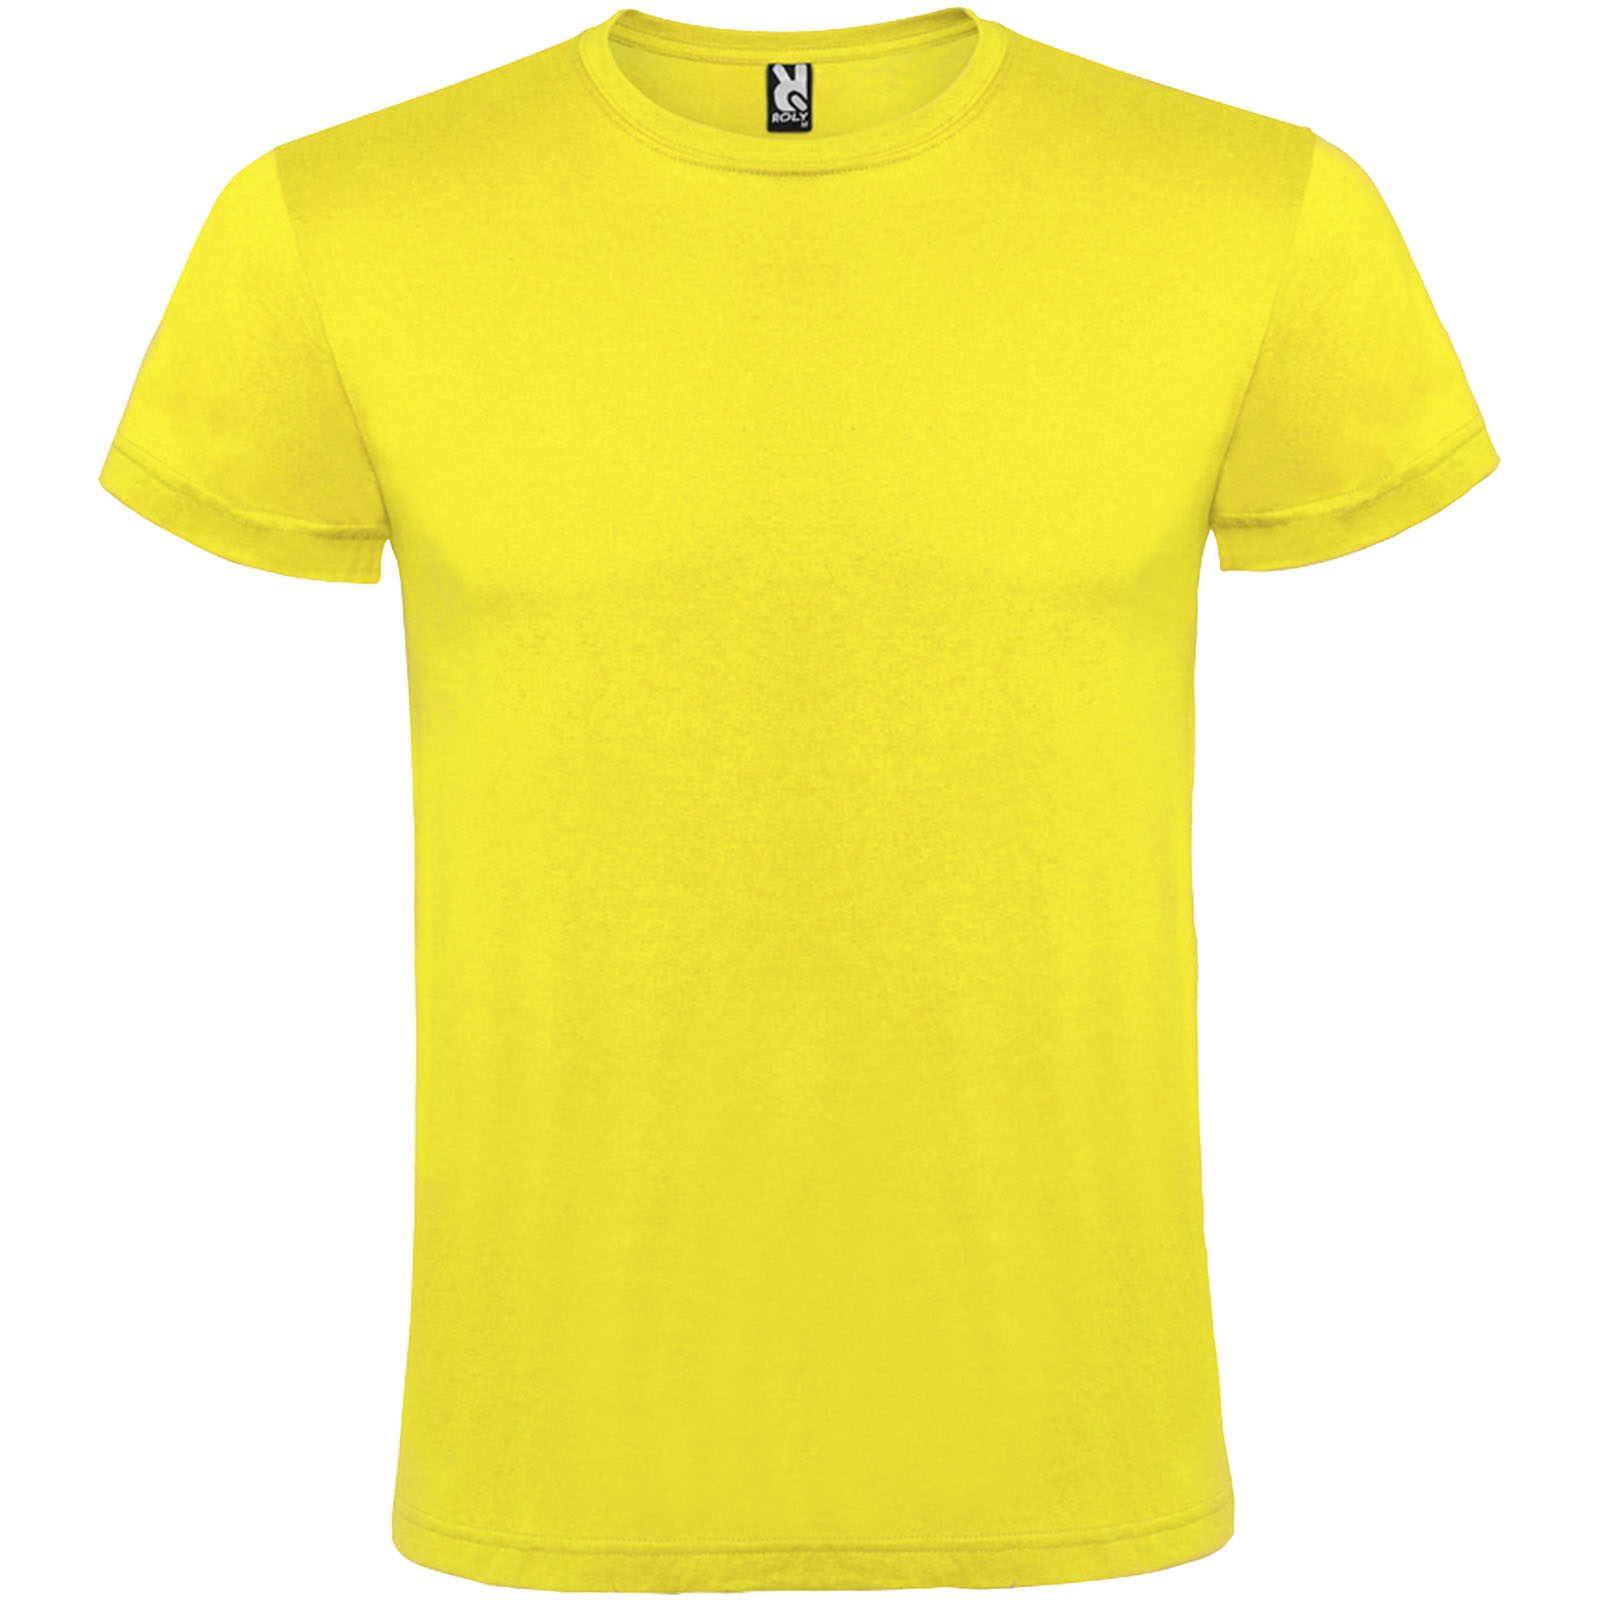 Atomic short sleeve unisex t-shirt - Ratby